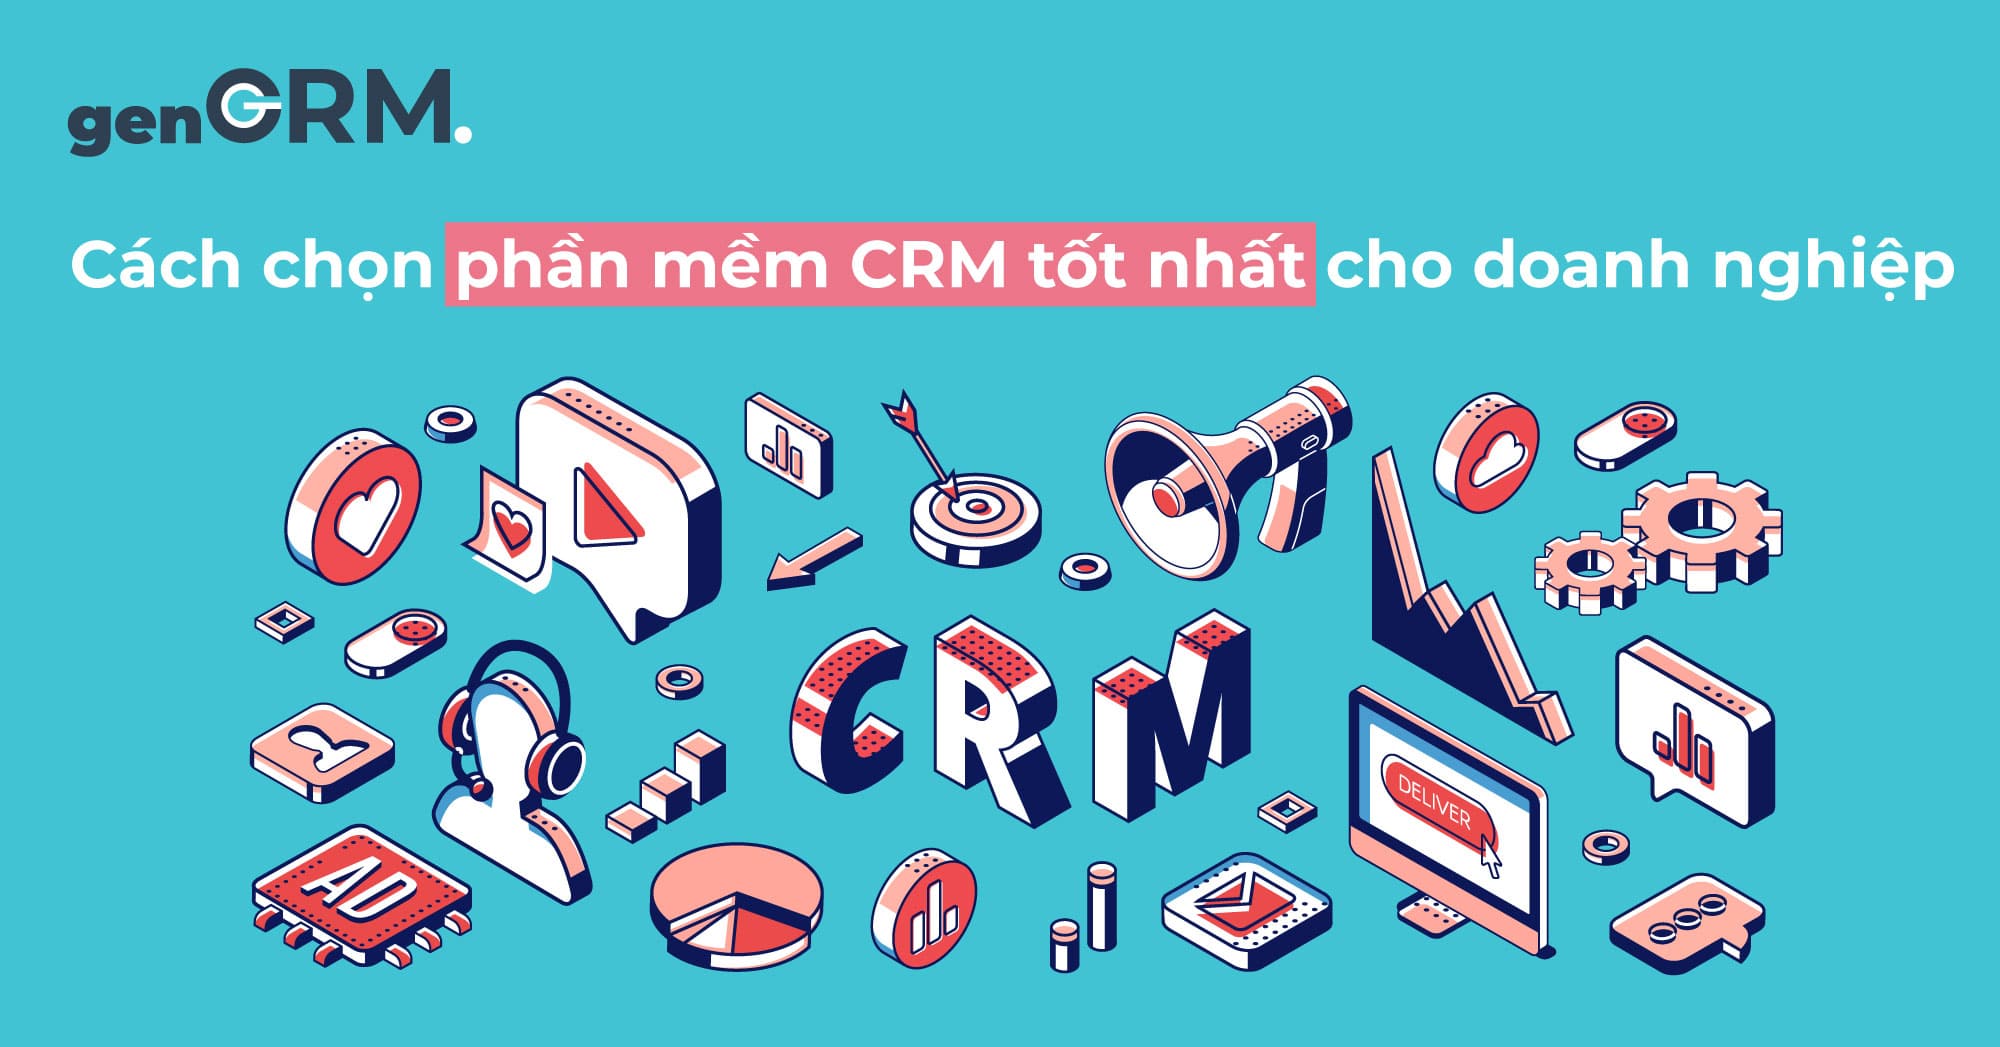 Cách-chọn-phần-mềm-CRM-tốt-nhất-cho-doanh-nghiệp